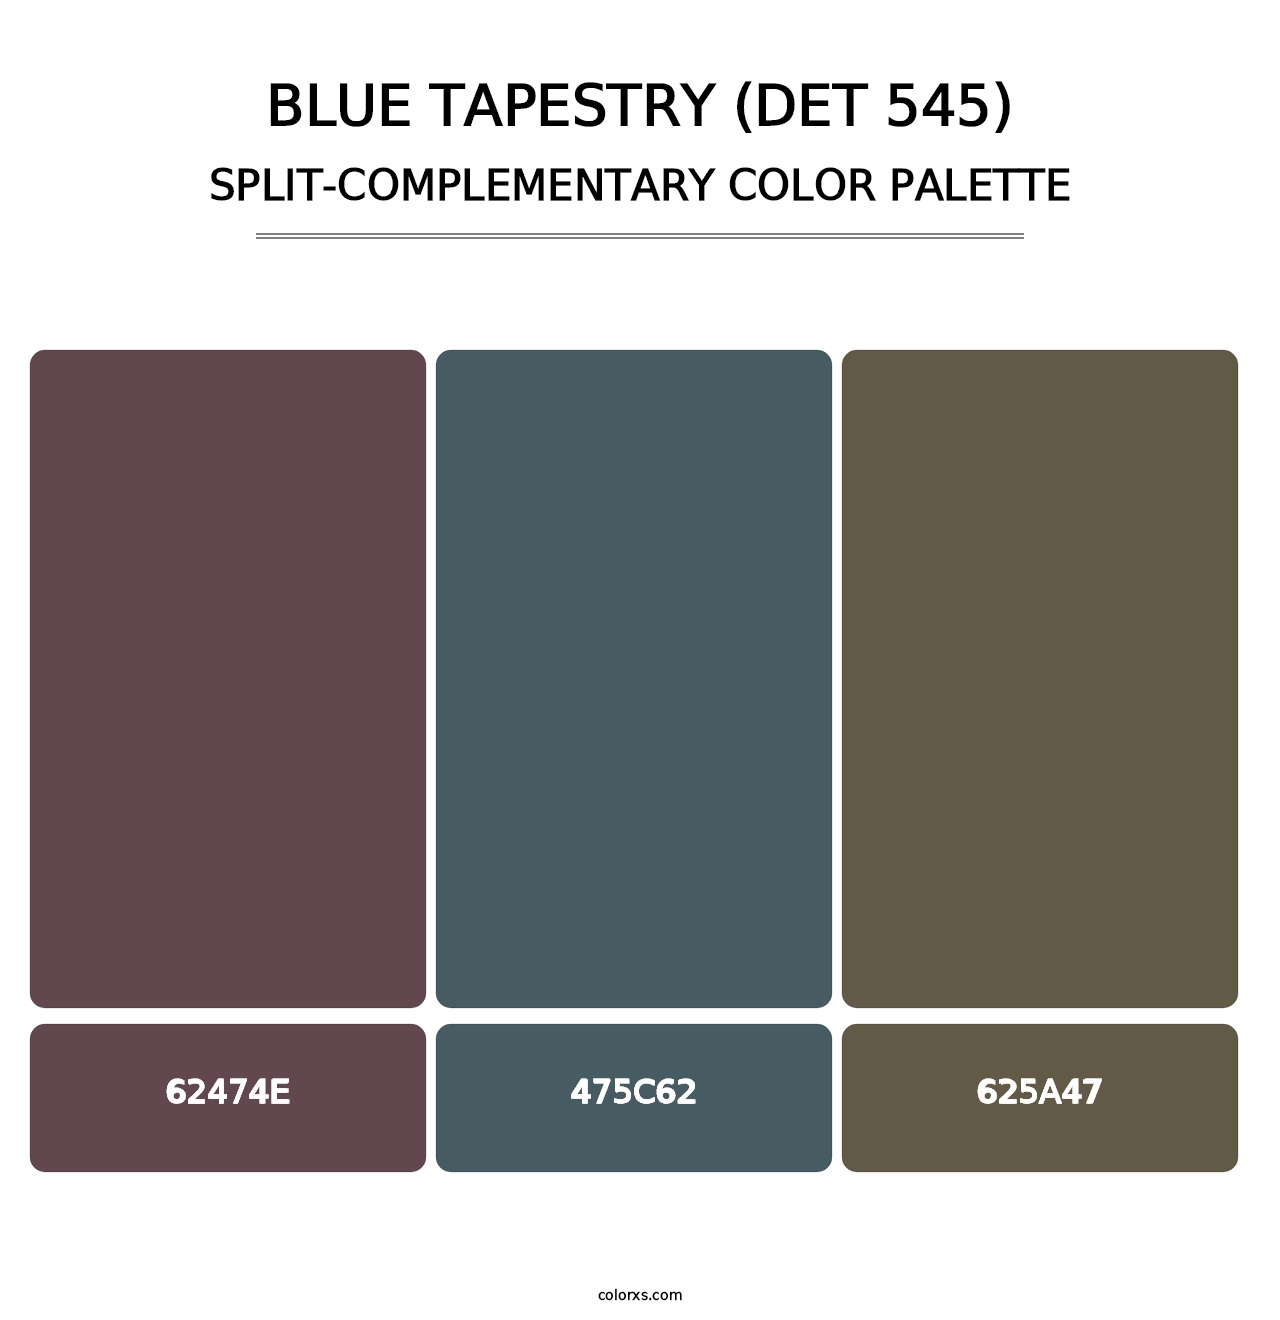 Blue Tapestry (DET 545) - Split-Complementary Color Palette